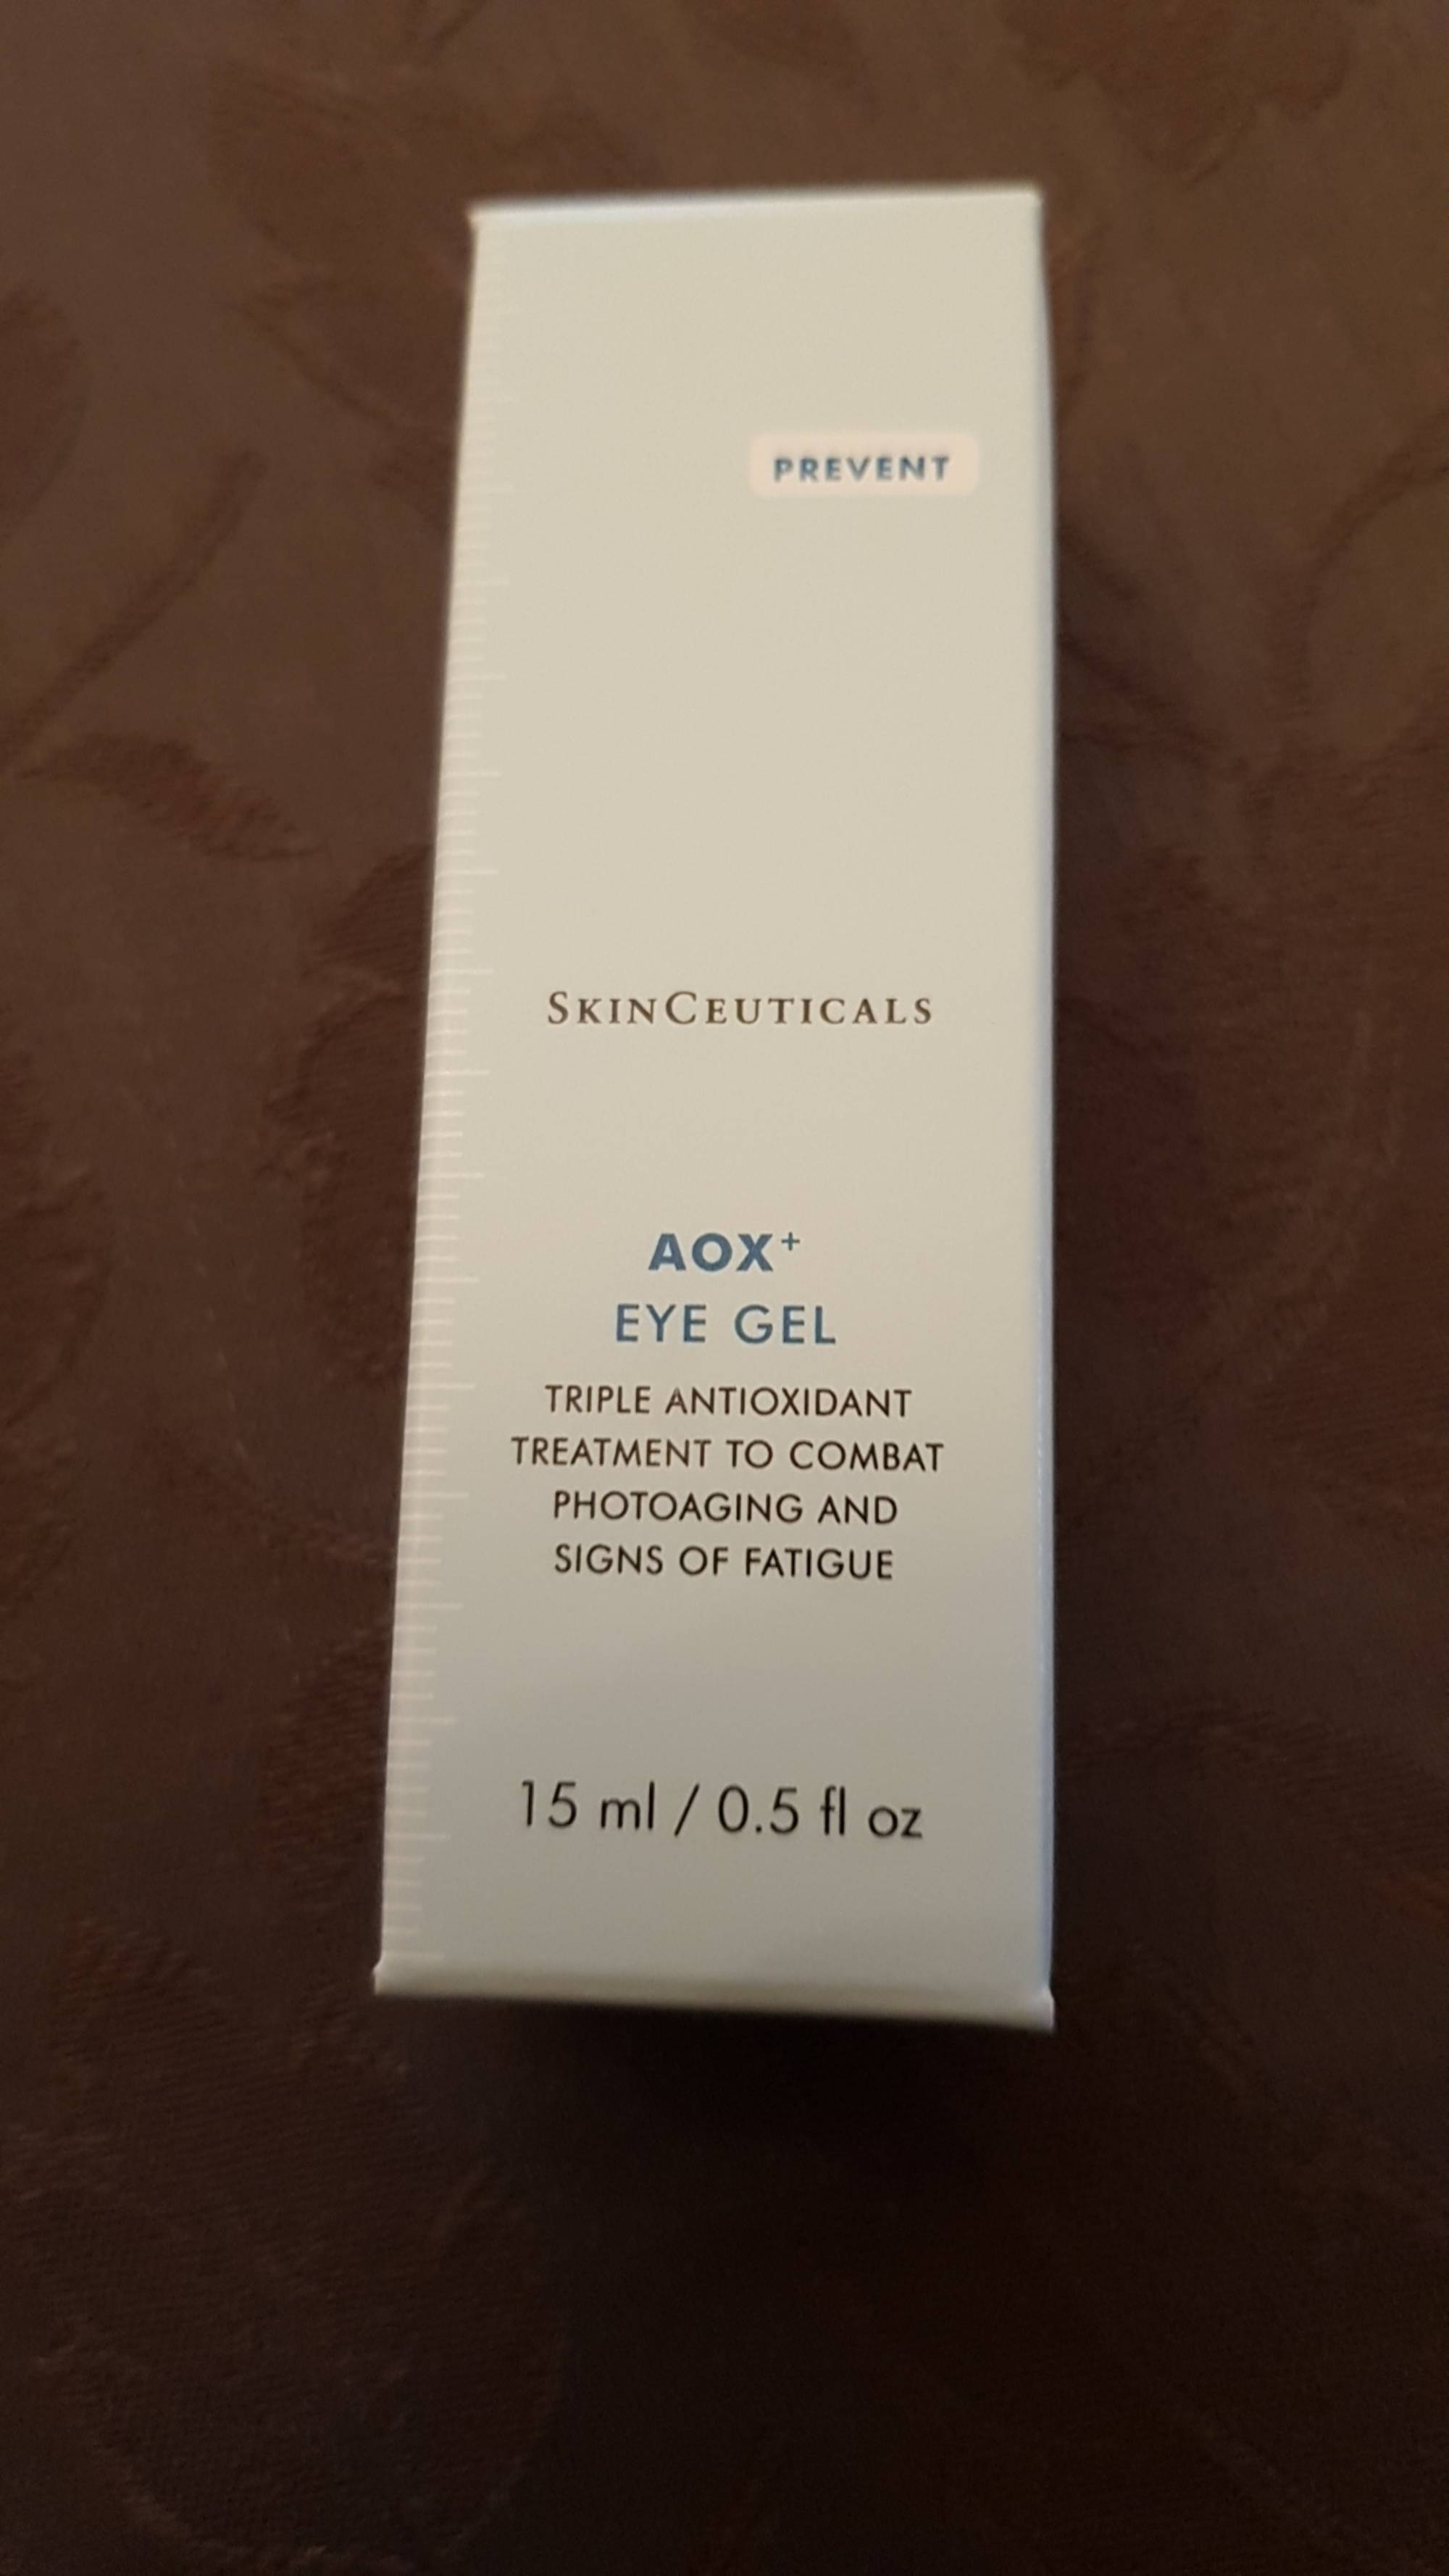 SKINCEUTICALS - Aox+ Eye gel - Triple antioxidant